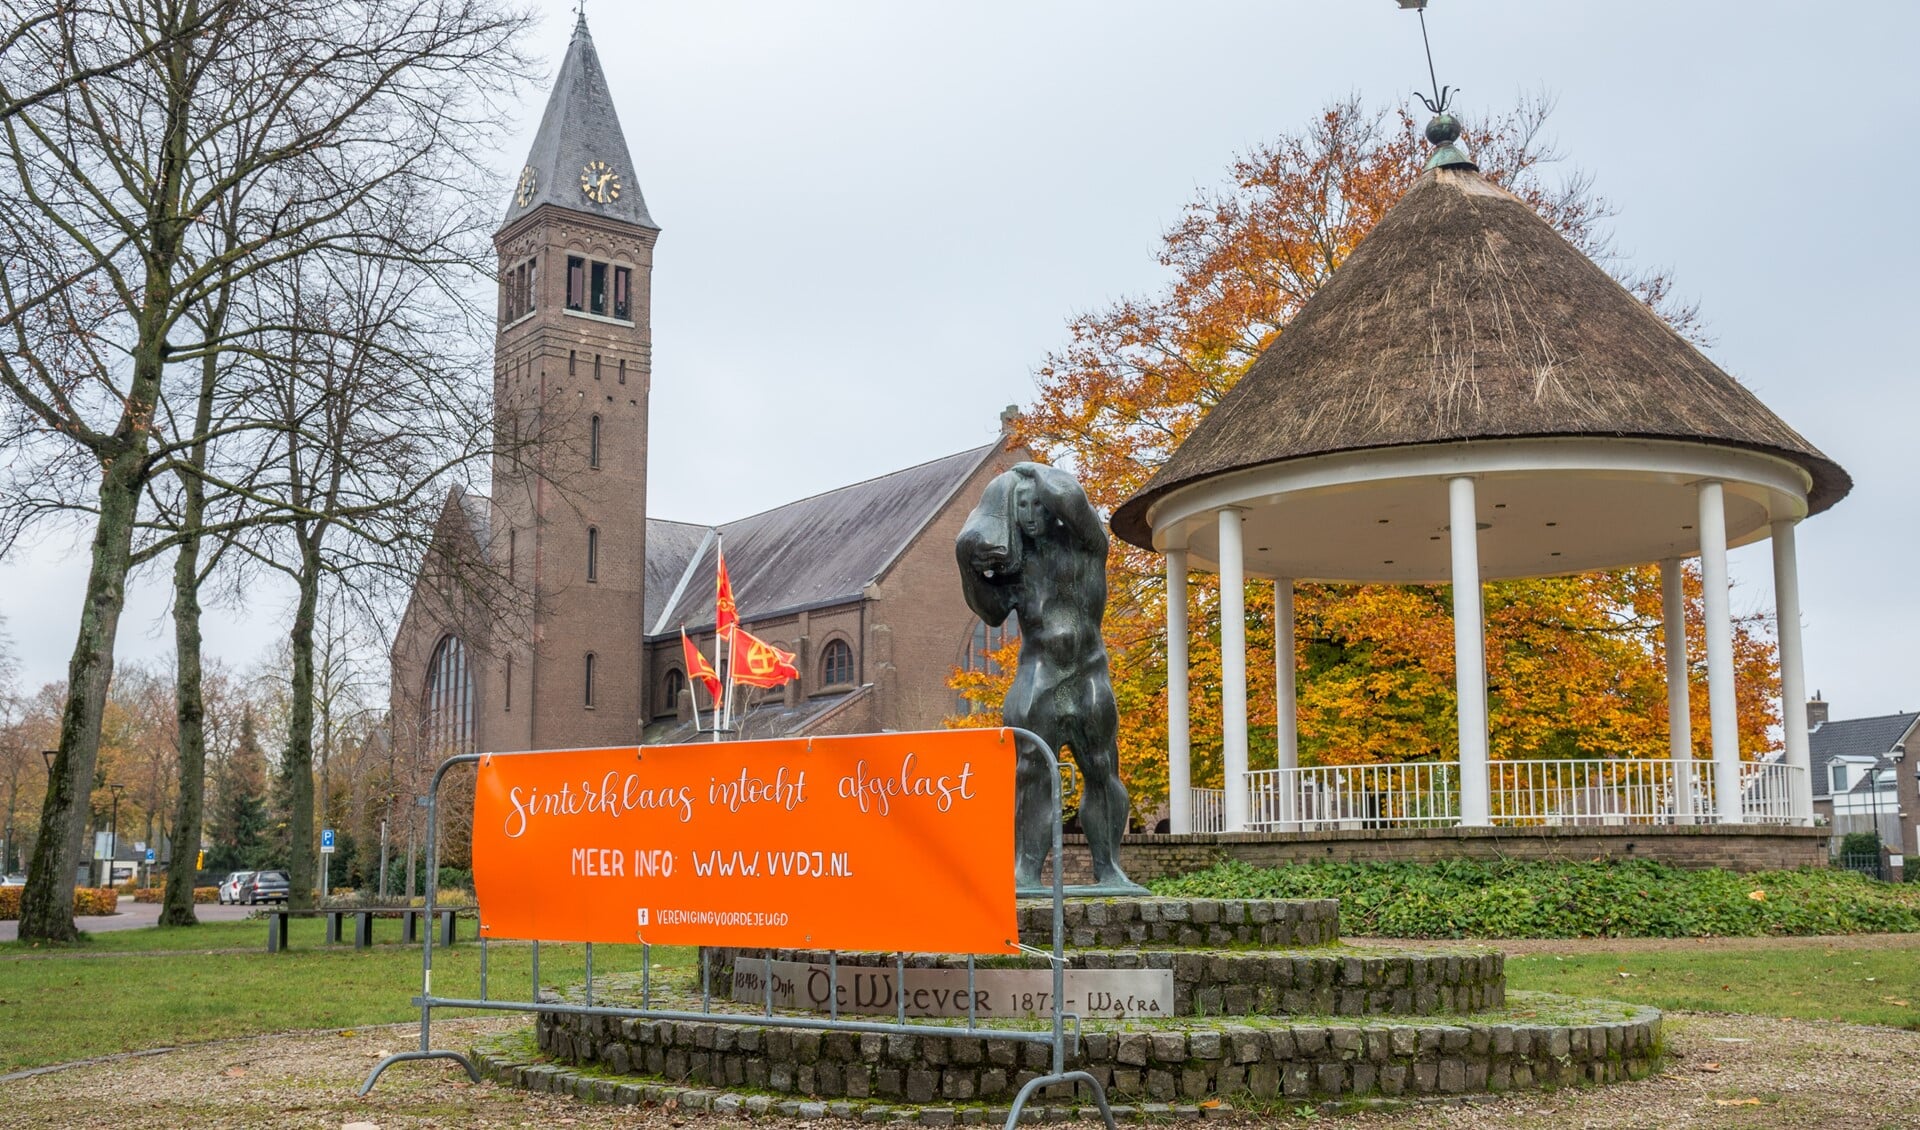 Het VvdJ-spandoek om de inwoners te laten weten dat de Sint-intocht niet doorging. (Foto: Yvonne Leijten)